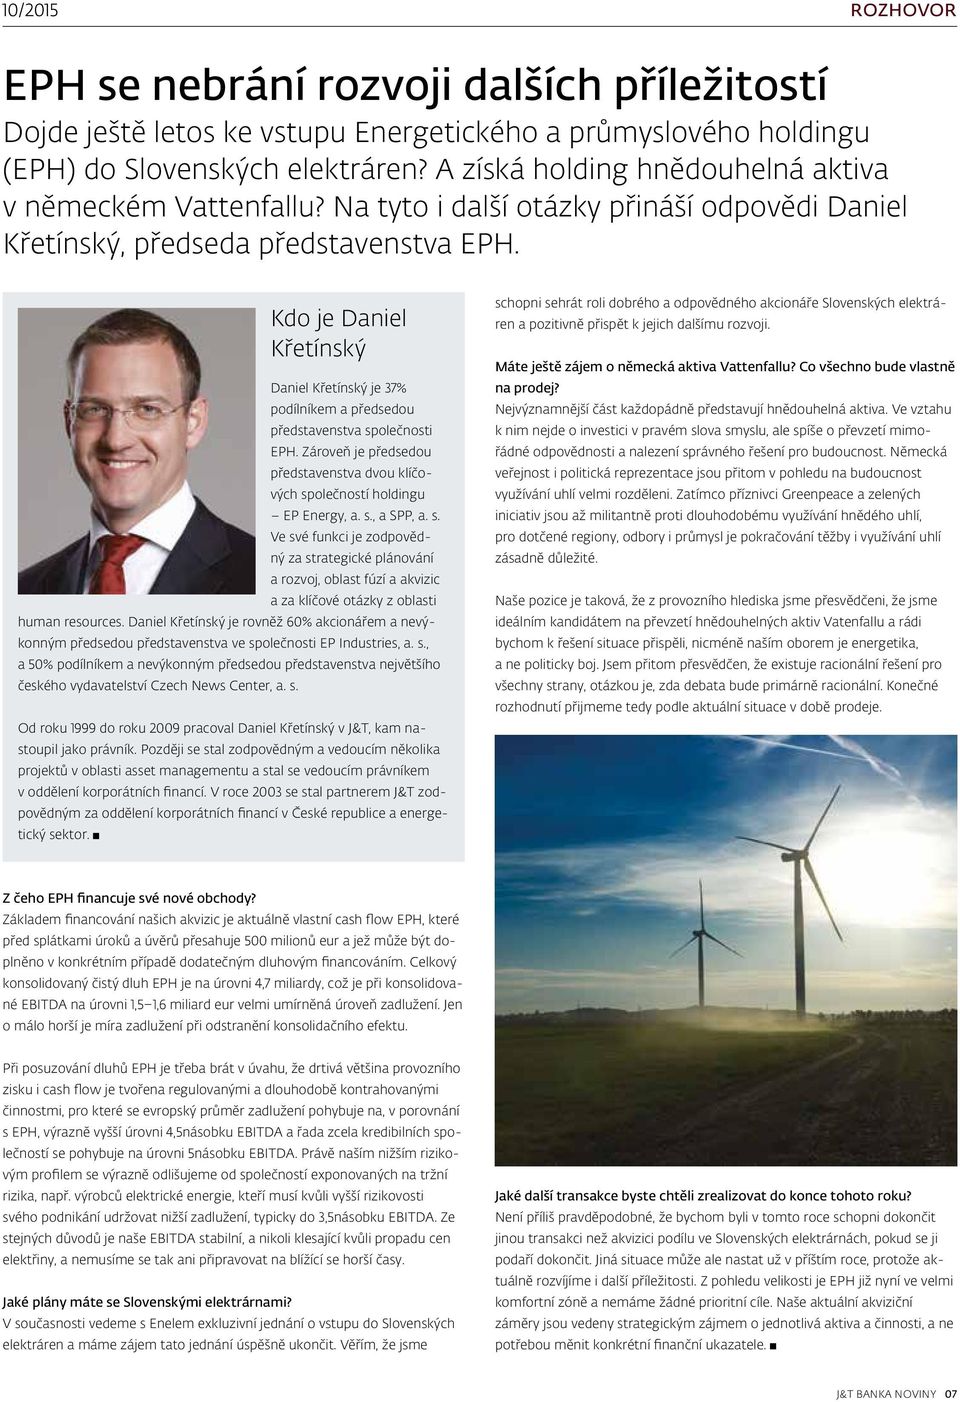 Kdo je Daniel Křetínský Daniel Křetínský je 37% podílníkem a předsedou představenstva společnosti EPH. Zároveň je předsedou představenstva dvou klíčových společností holdingu EP Energy, a. s., a SPP, a.